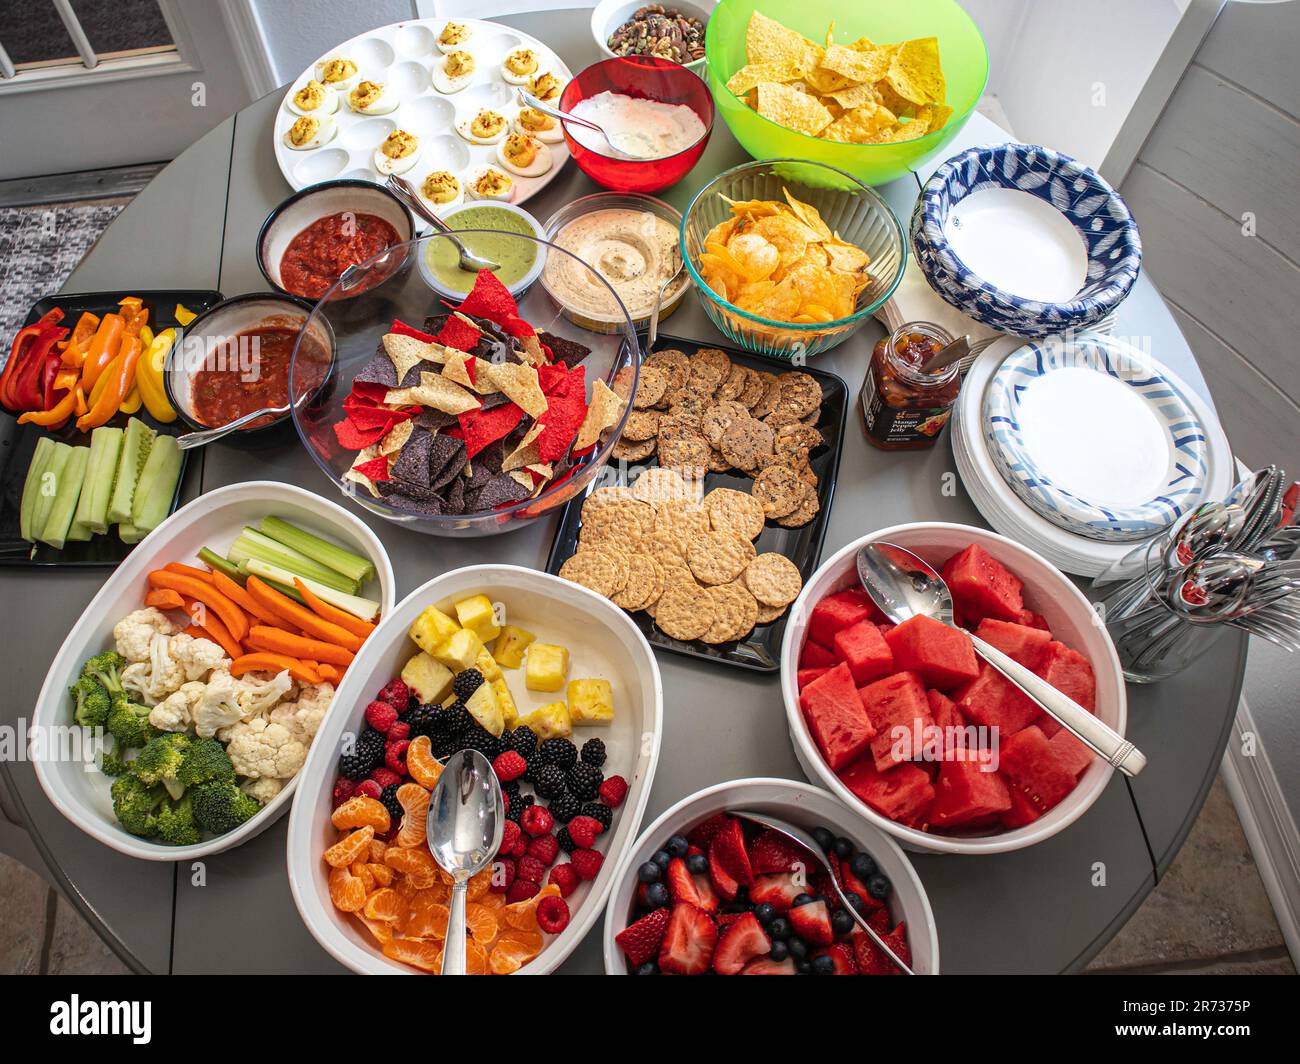 Gesundes Speisenbuffet mit Gemüse, Obst, Snacks, Picknick, Wassermelone, Mit teuflischen Eiern. Stockfoto